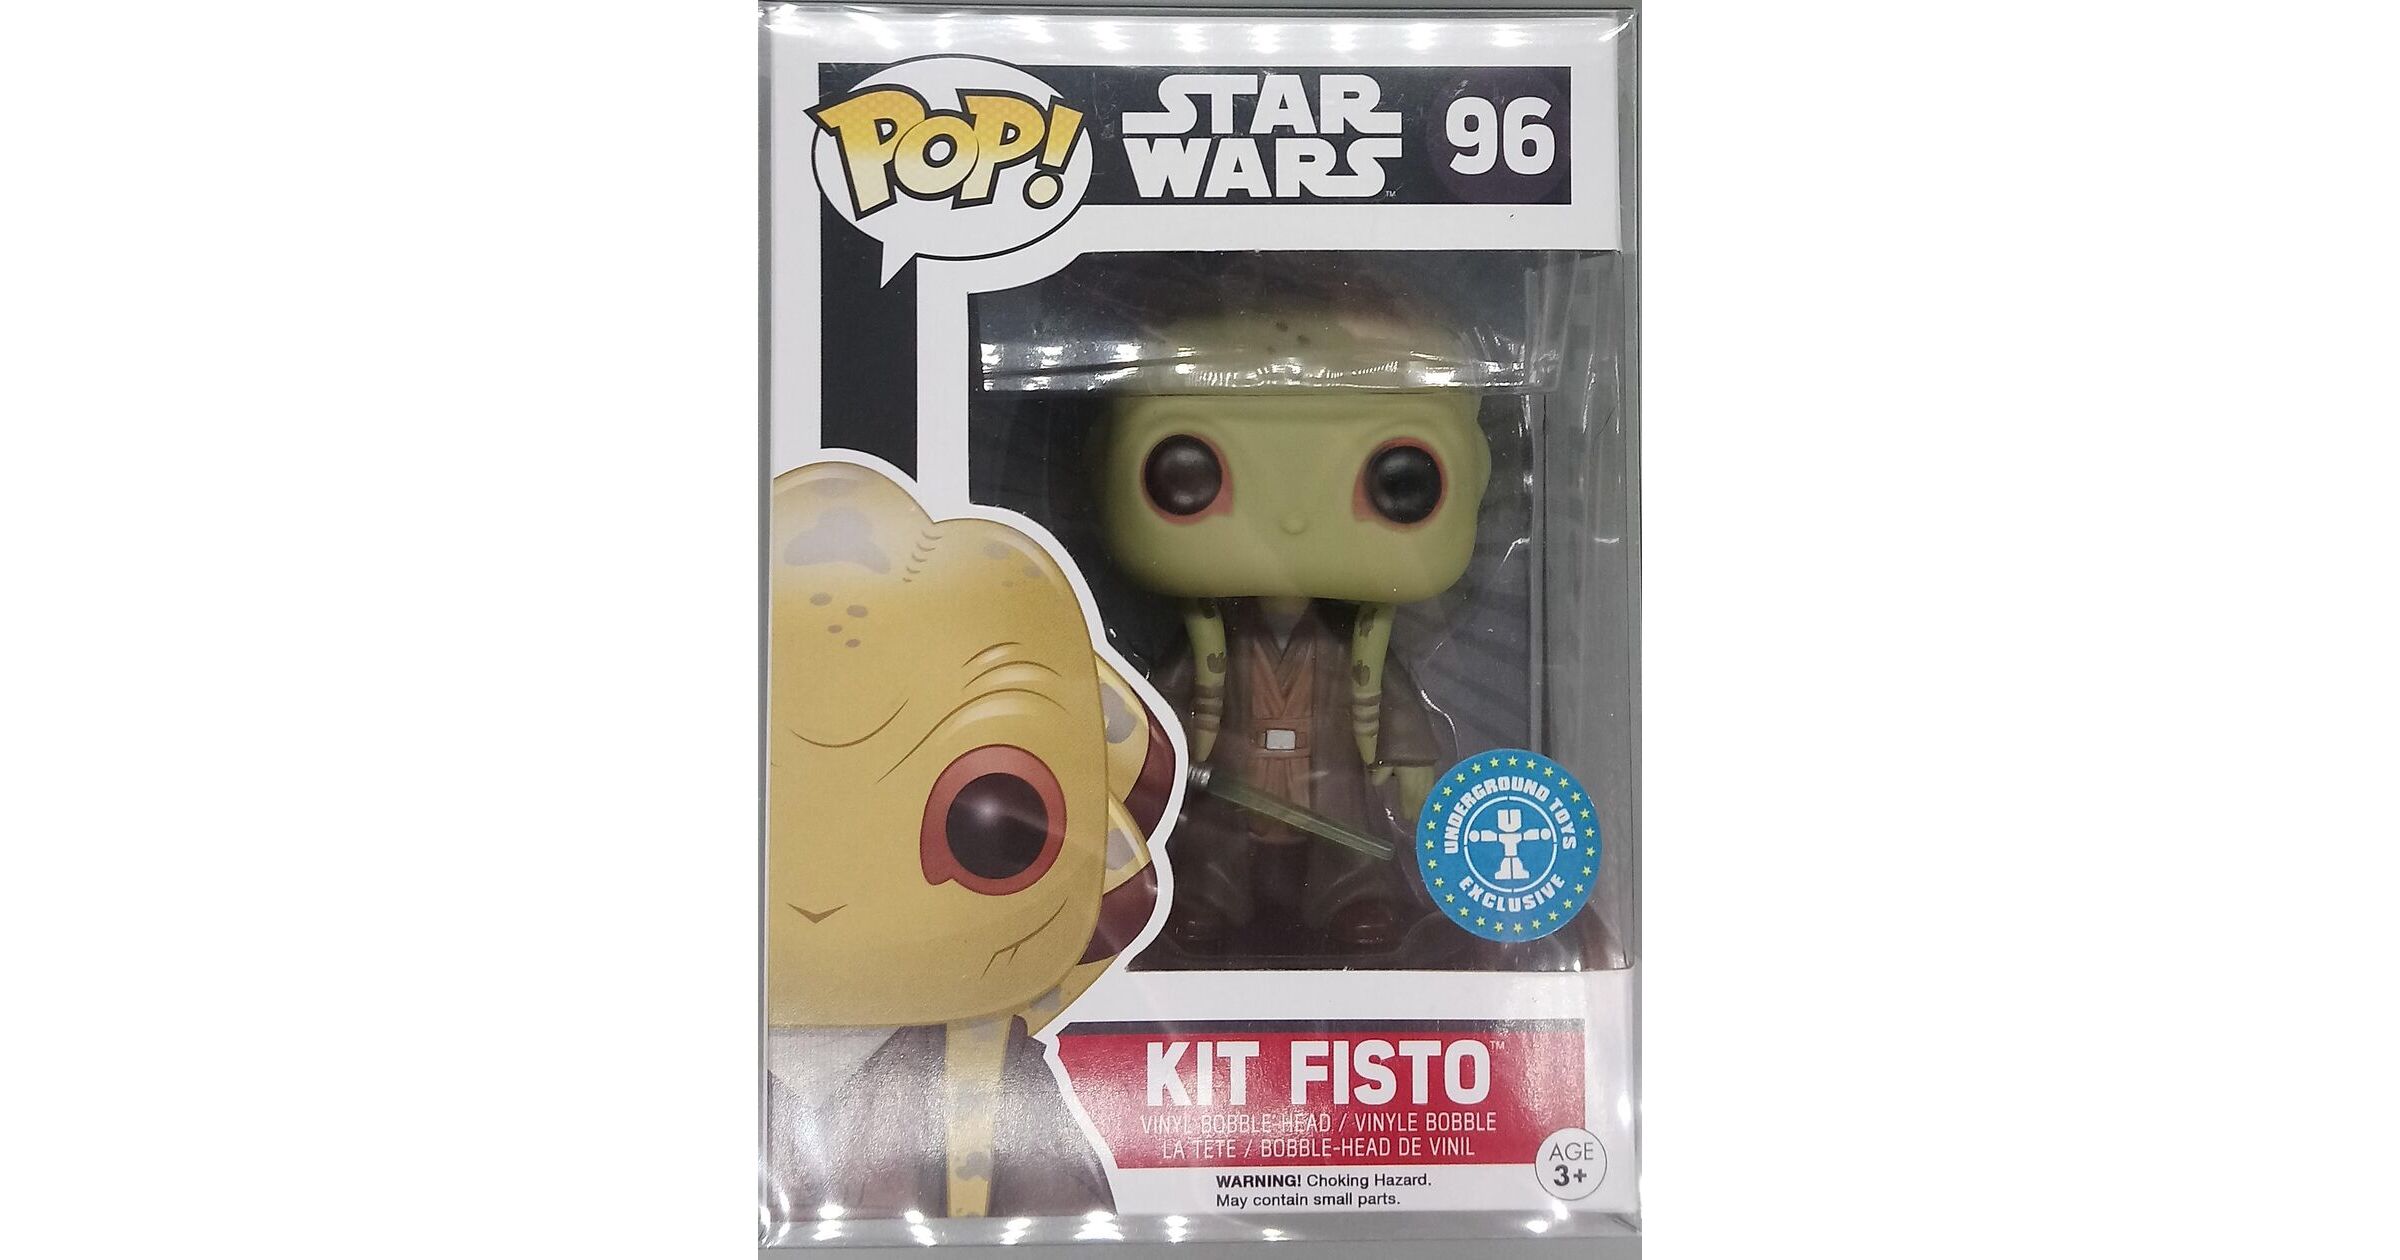 送料無料/即納】 ファンコ FUNKO フィギュア 8554 Funko Pop! Star Wars Kit Fisto (Limited  Exclusive Edition)